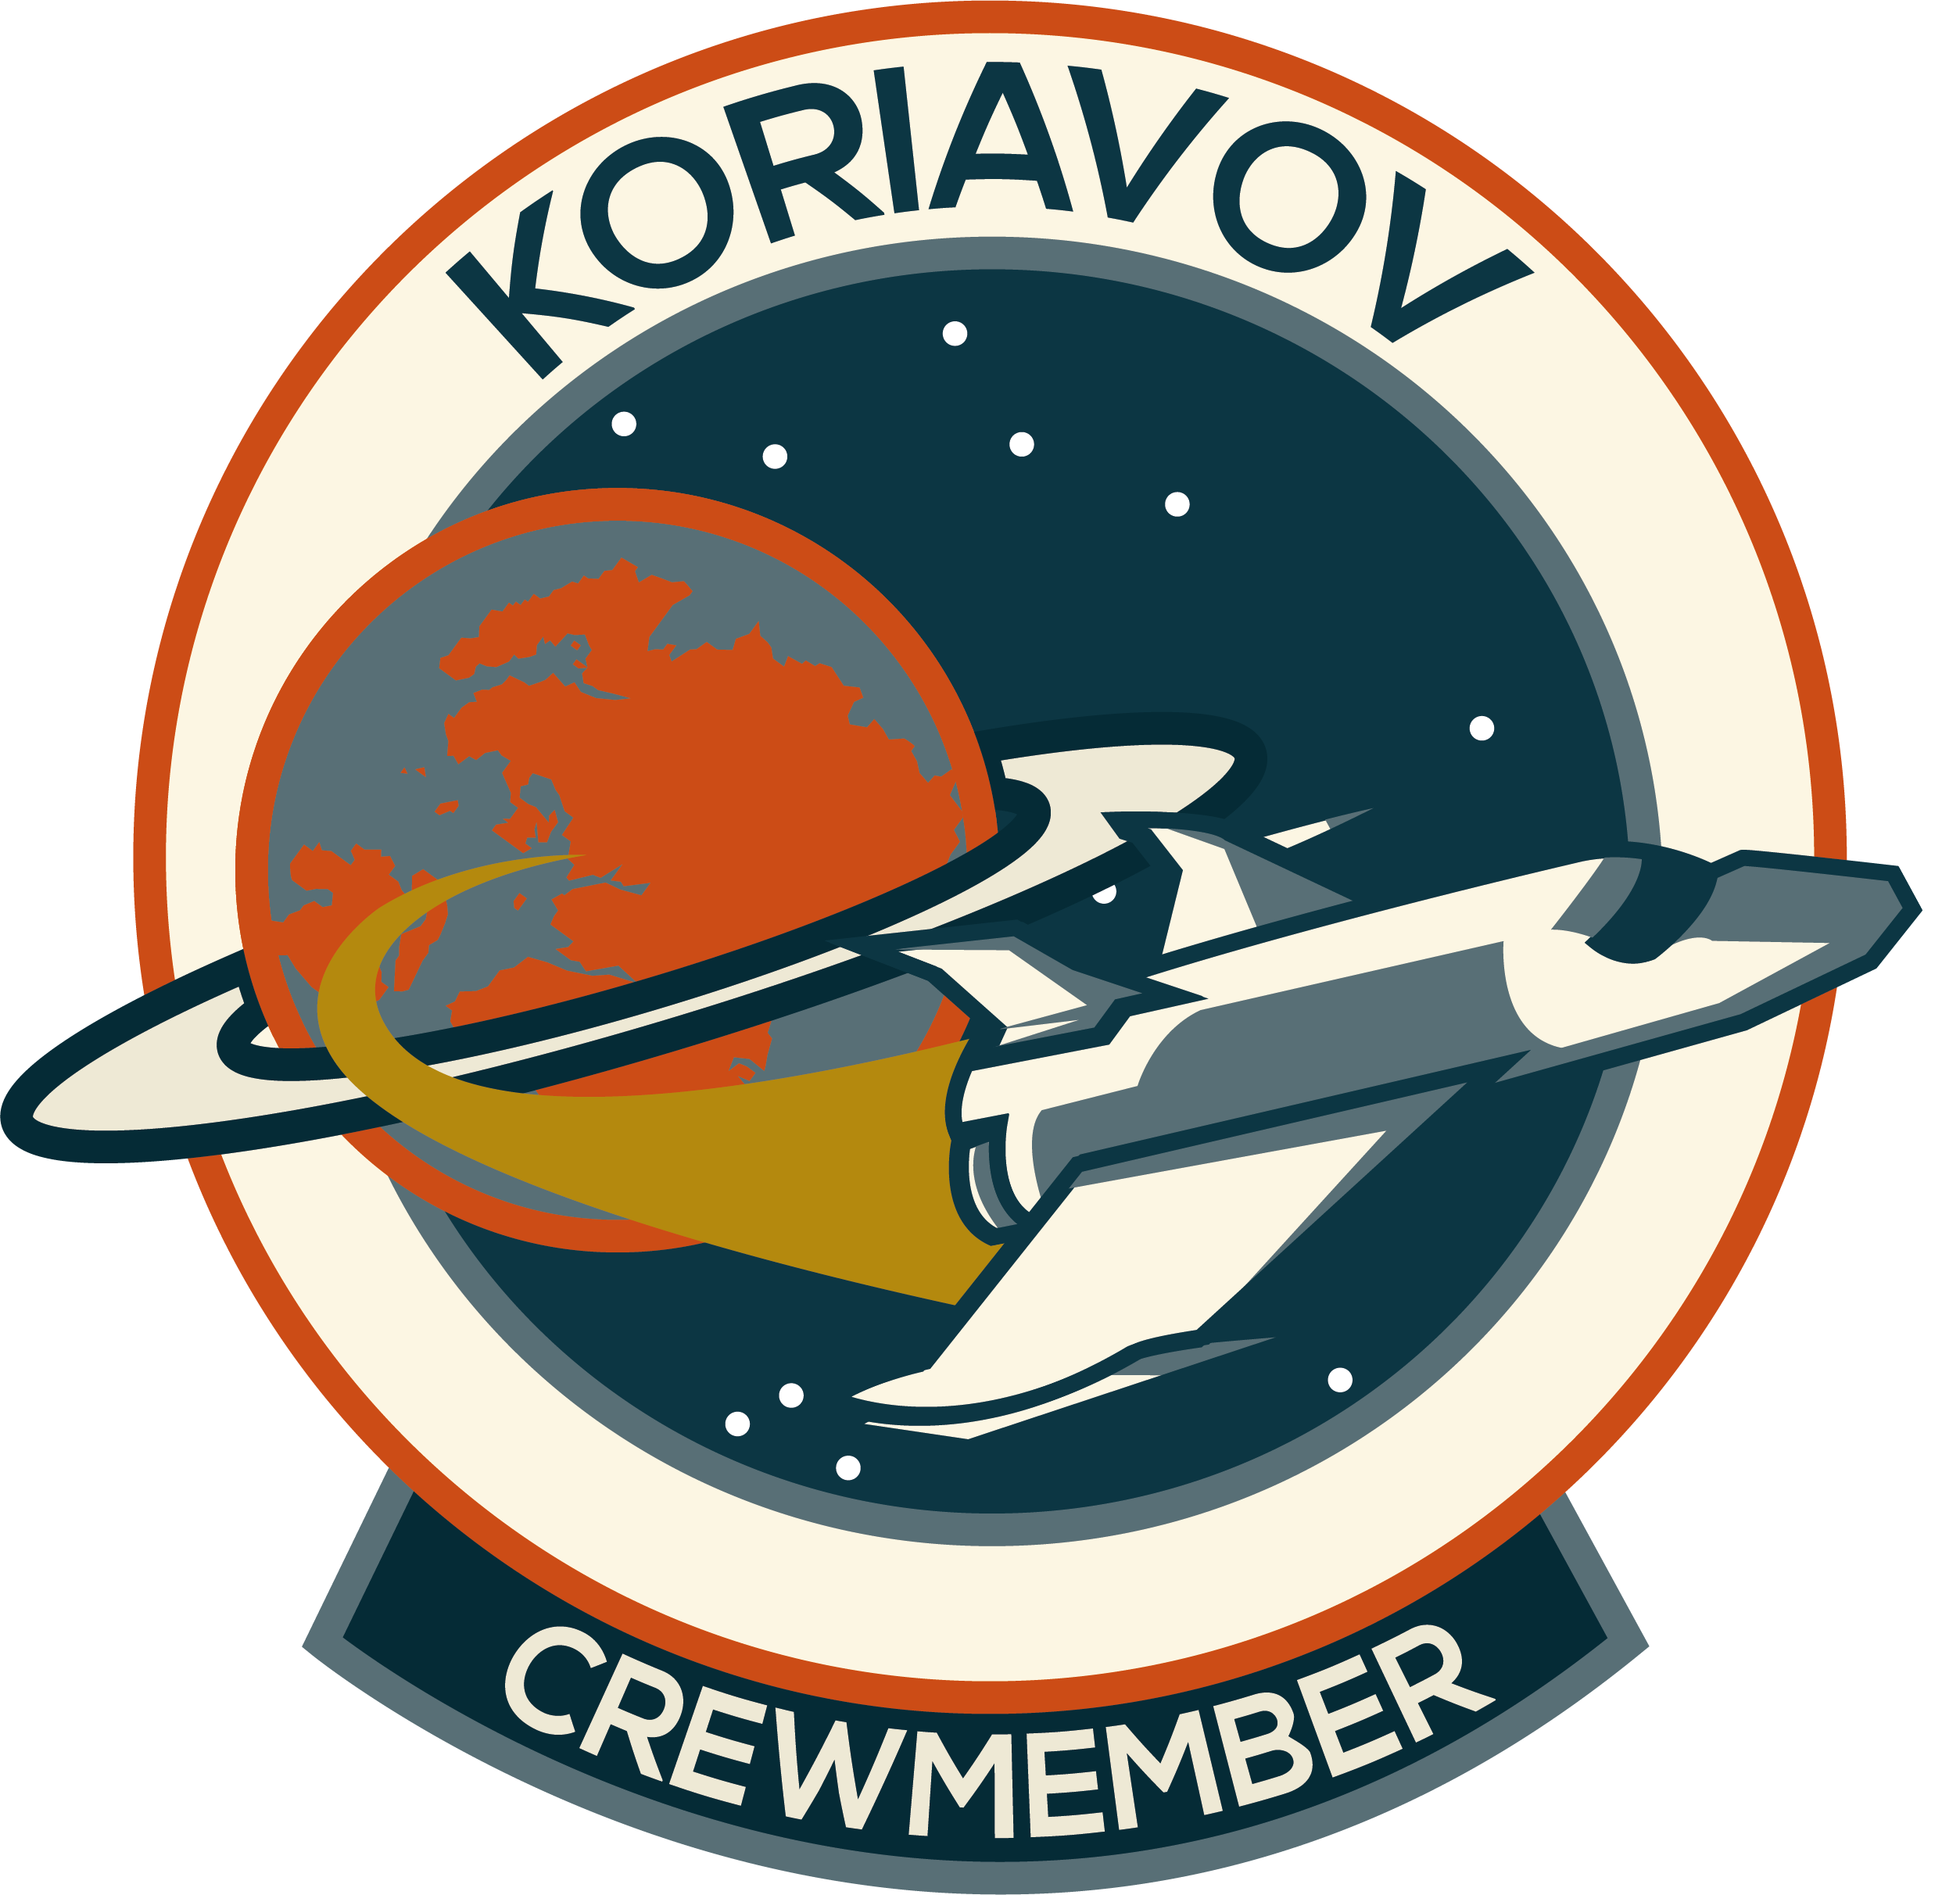 Koriavov Crewmembers